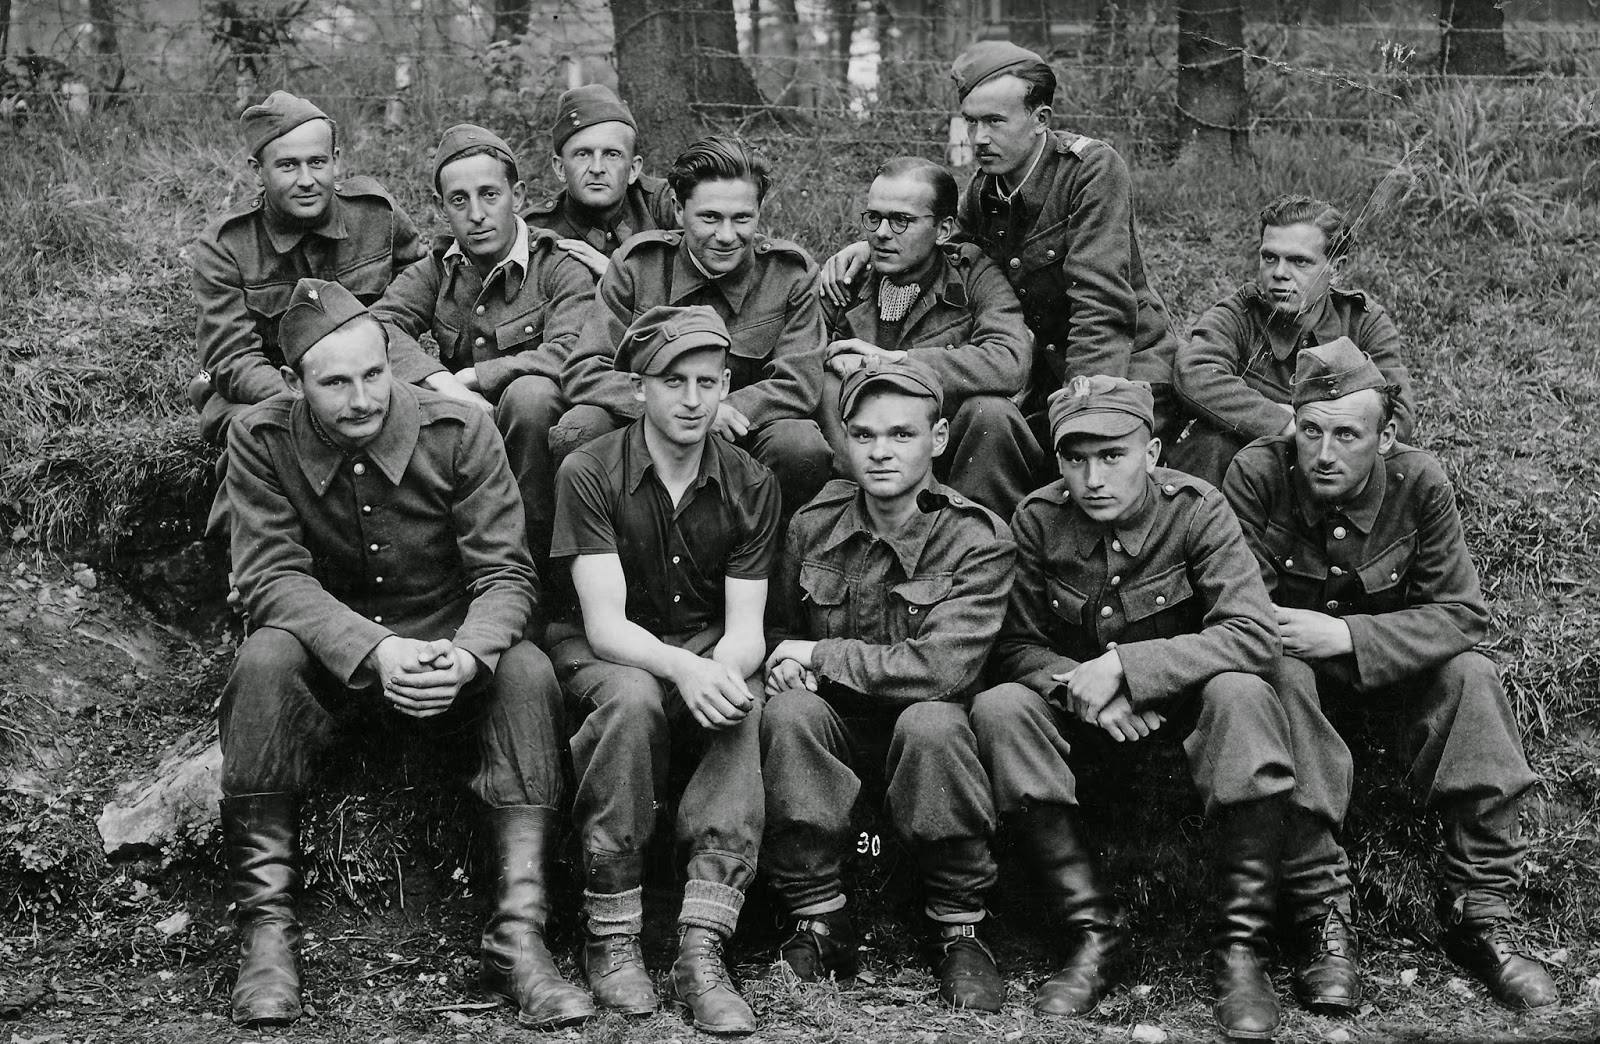 A group of Polish POWs at Colditz (Oflag IV-c)